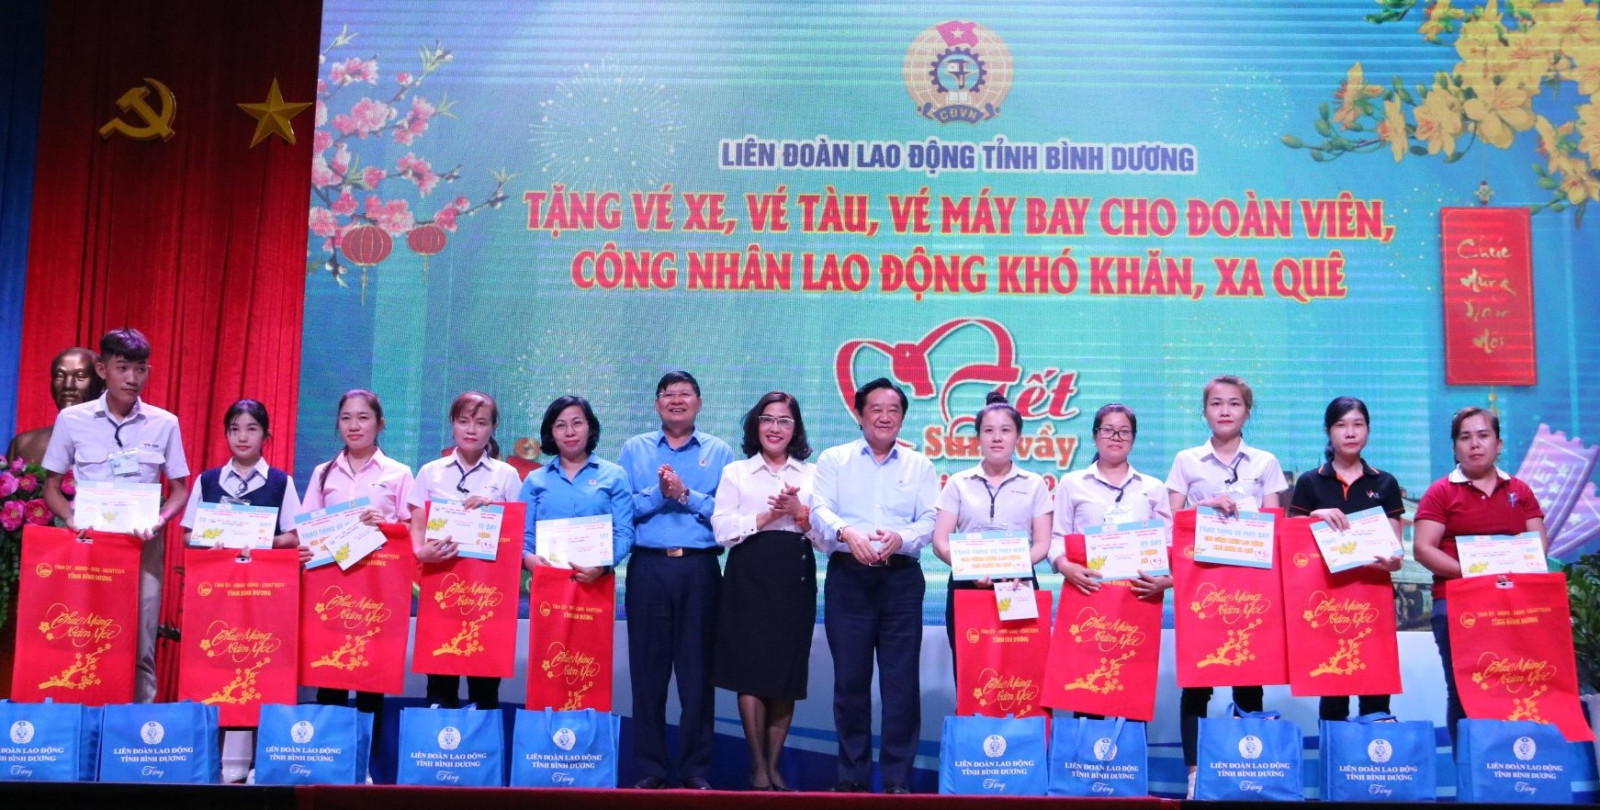 Đồng chí Nguyễn Hoàng Thao, Phó Bí thư Thường trực Tỉnh ủy Bình Dương trao học bổng cho con em người lao động khó khăn.